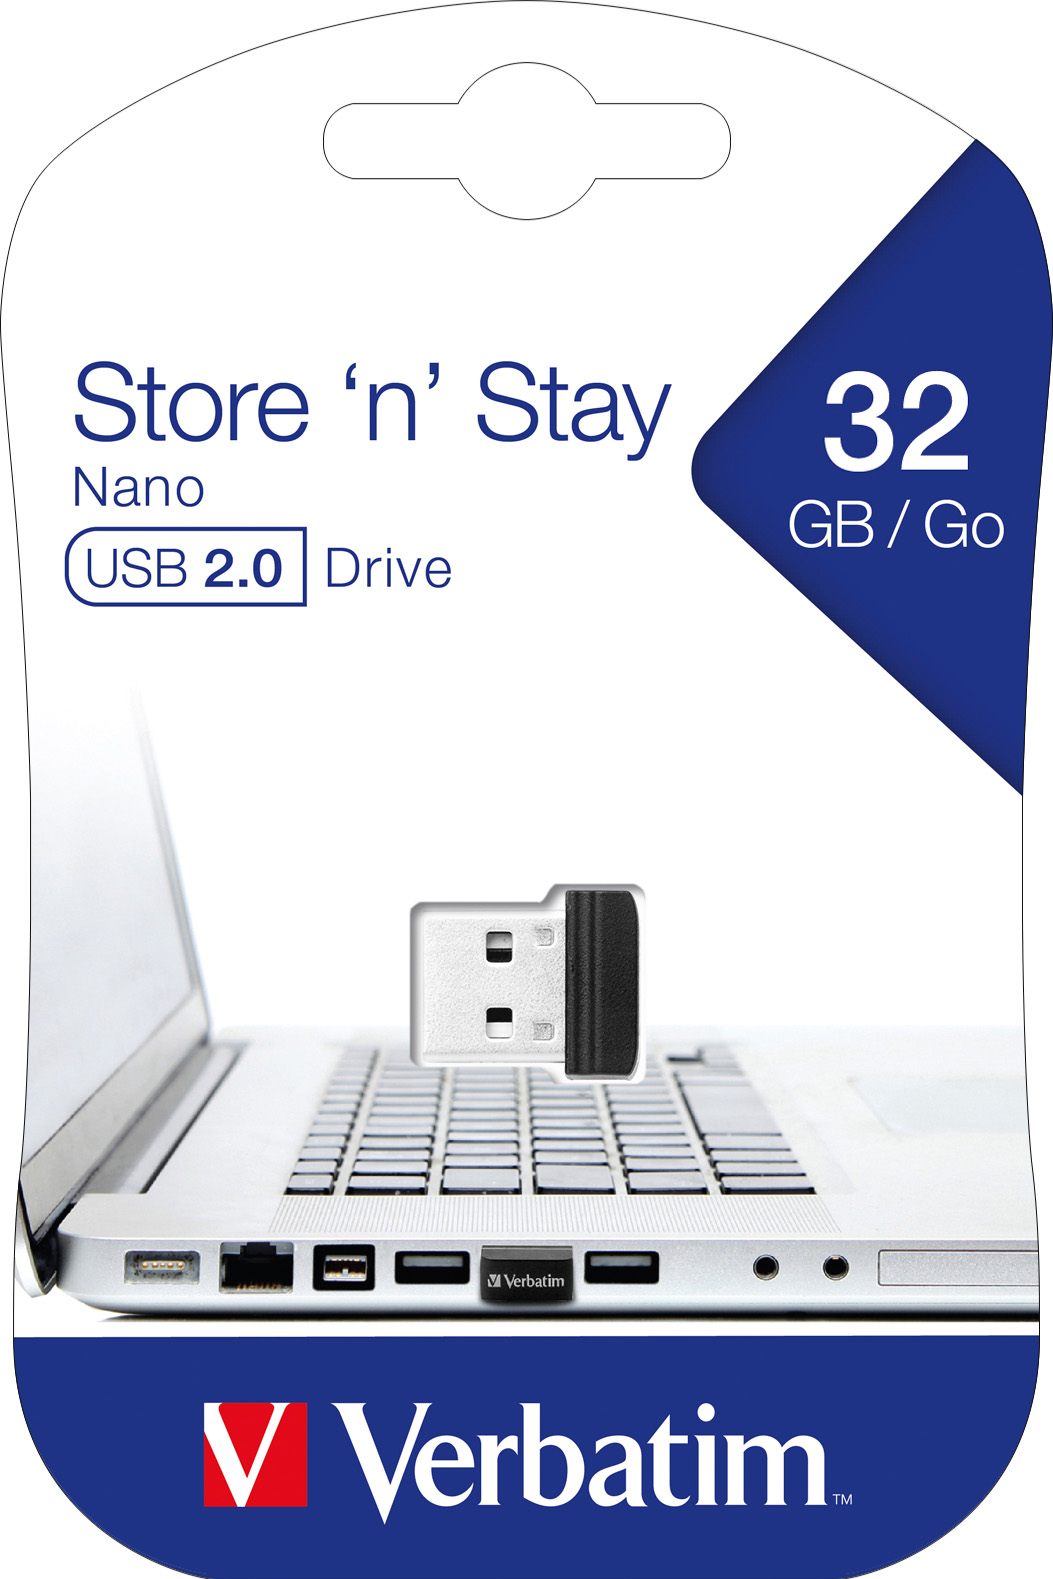 Verbatim USB 2.0 Stick 32GB, Nano Store'n'Stay (R) 10MB/s, (W) 3MB/s, Retail-Blister